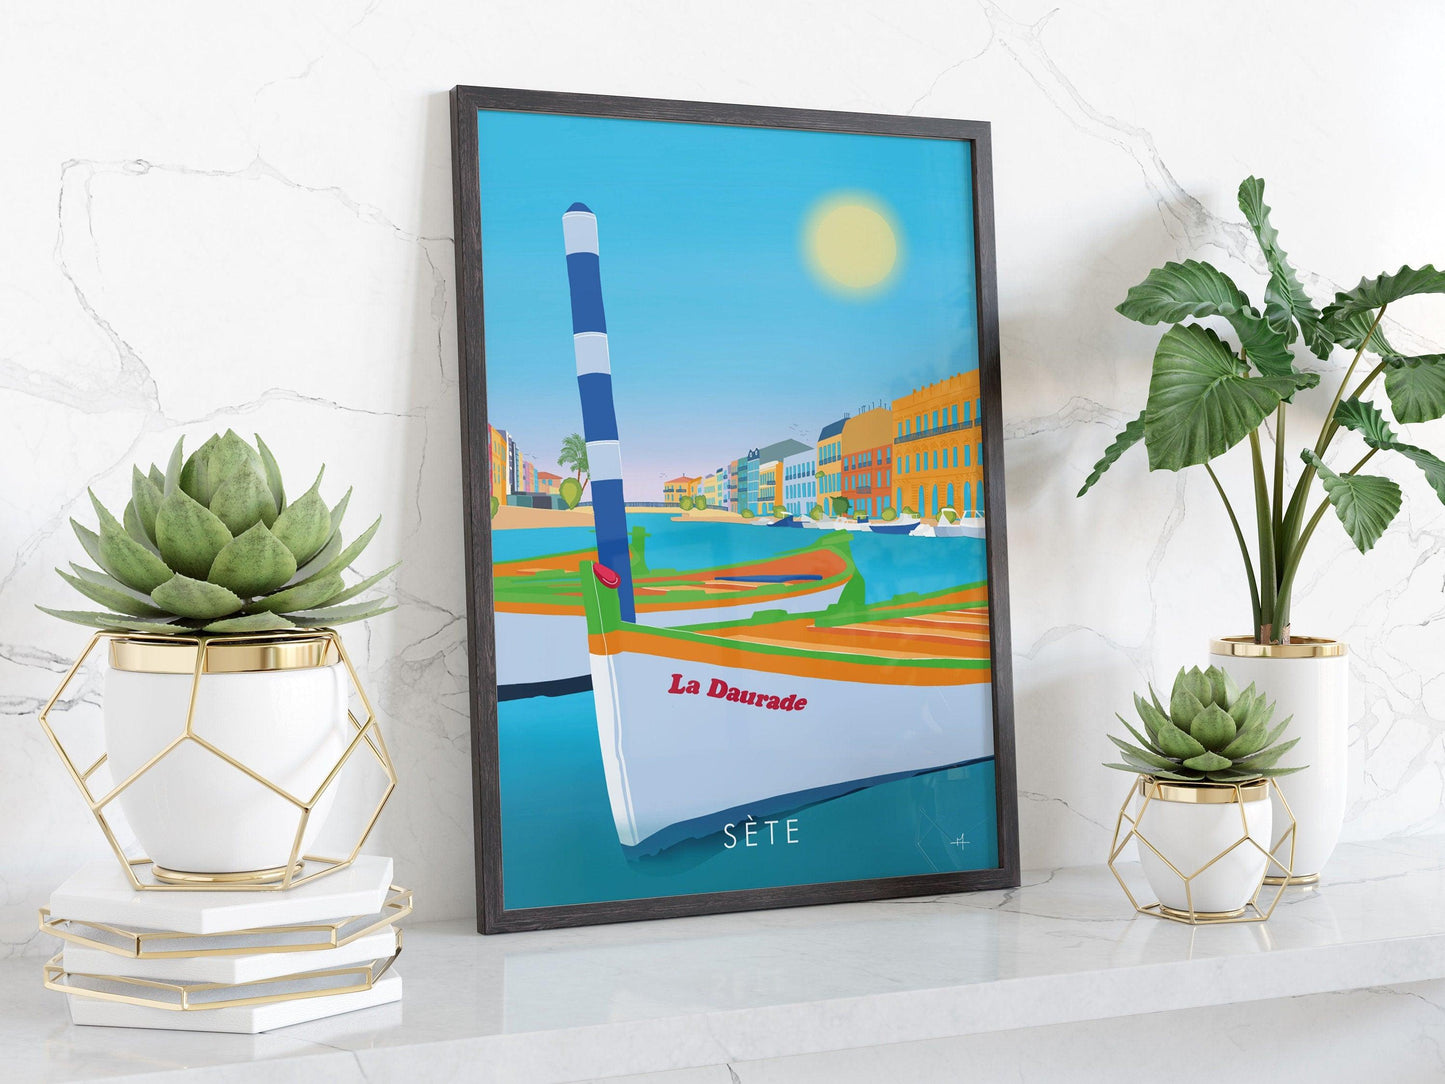 Sète - Hérault - France - vacances carte postale affiche - couleurs du sud - plage et soleil - méditerranée - souvenir cadeau été - Imagine.affiche